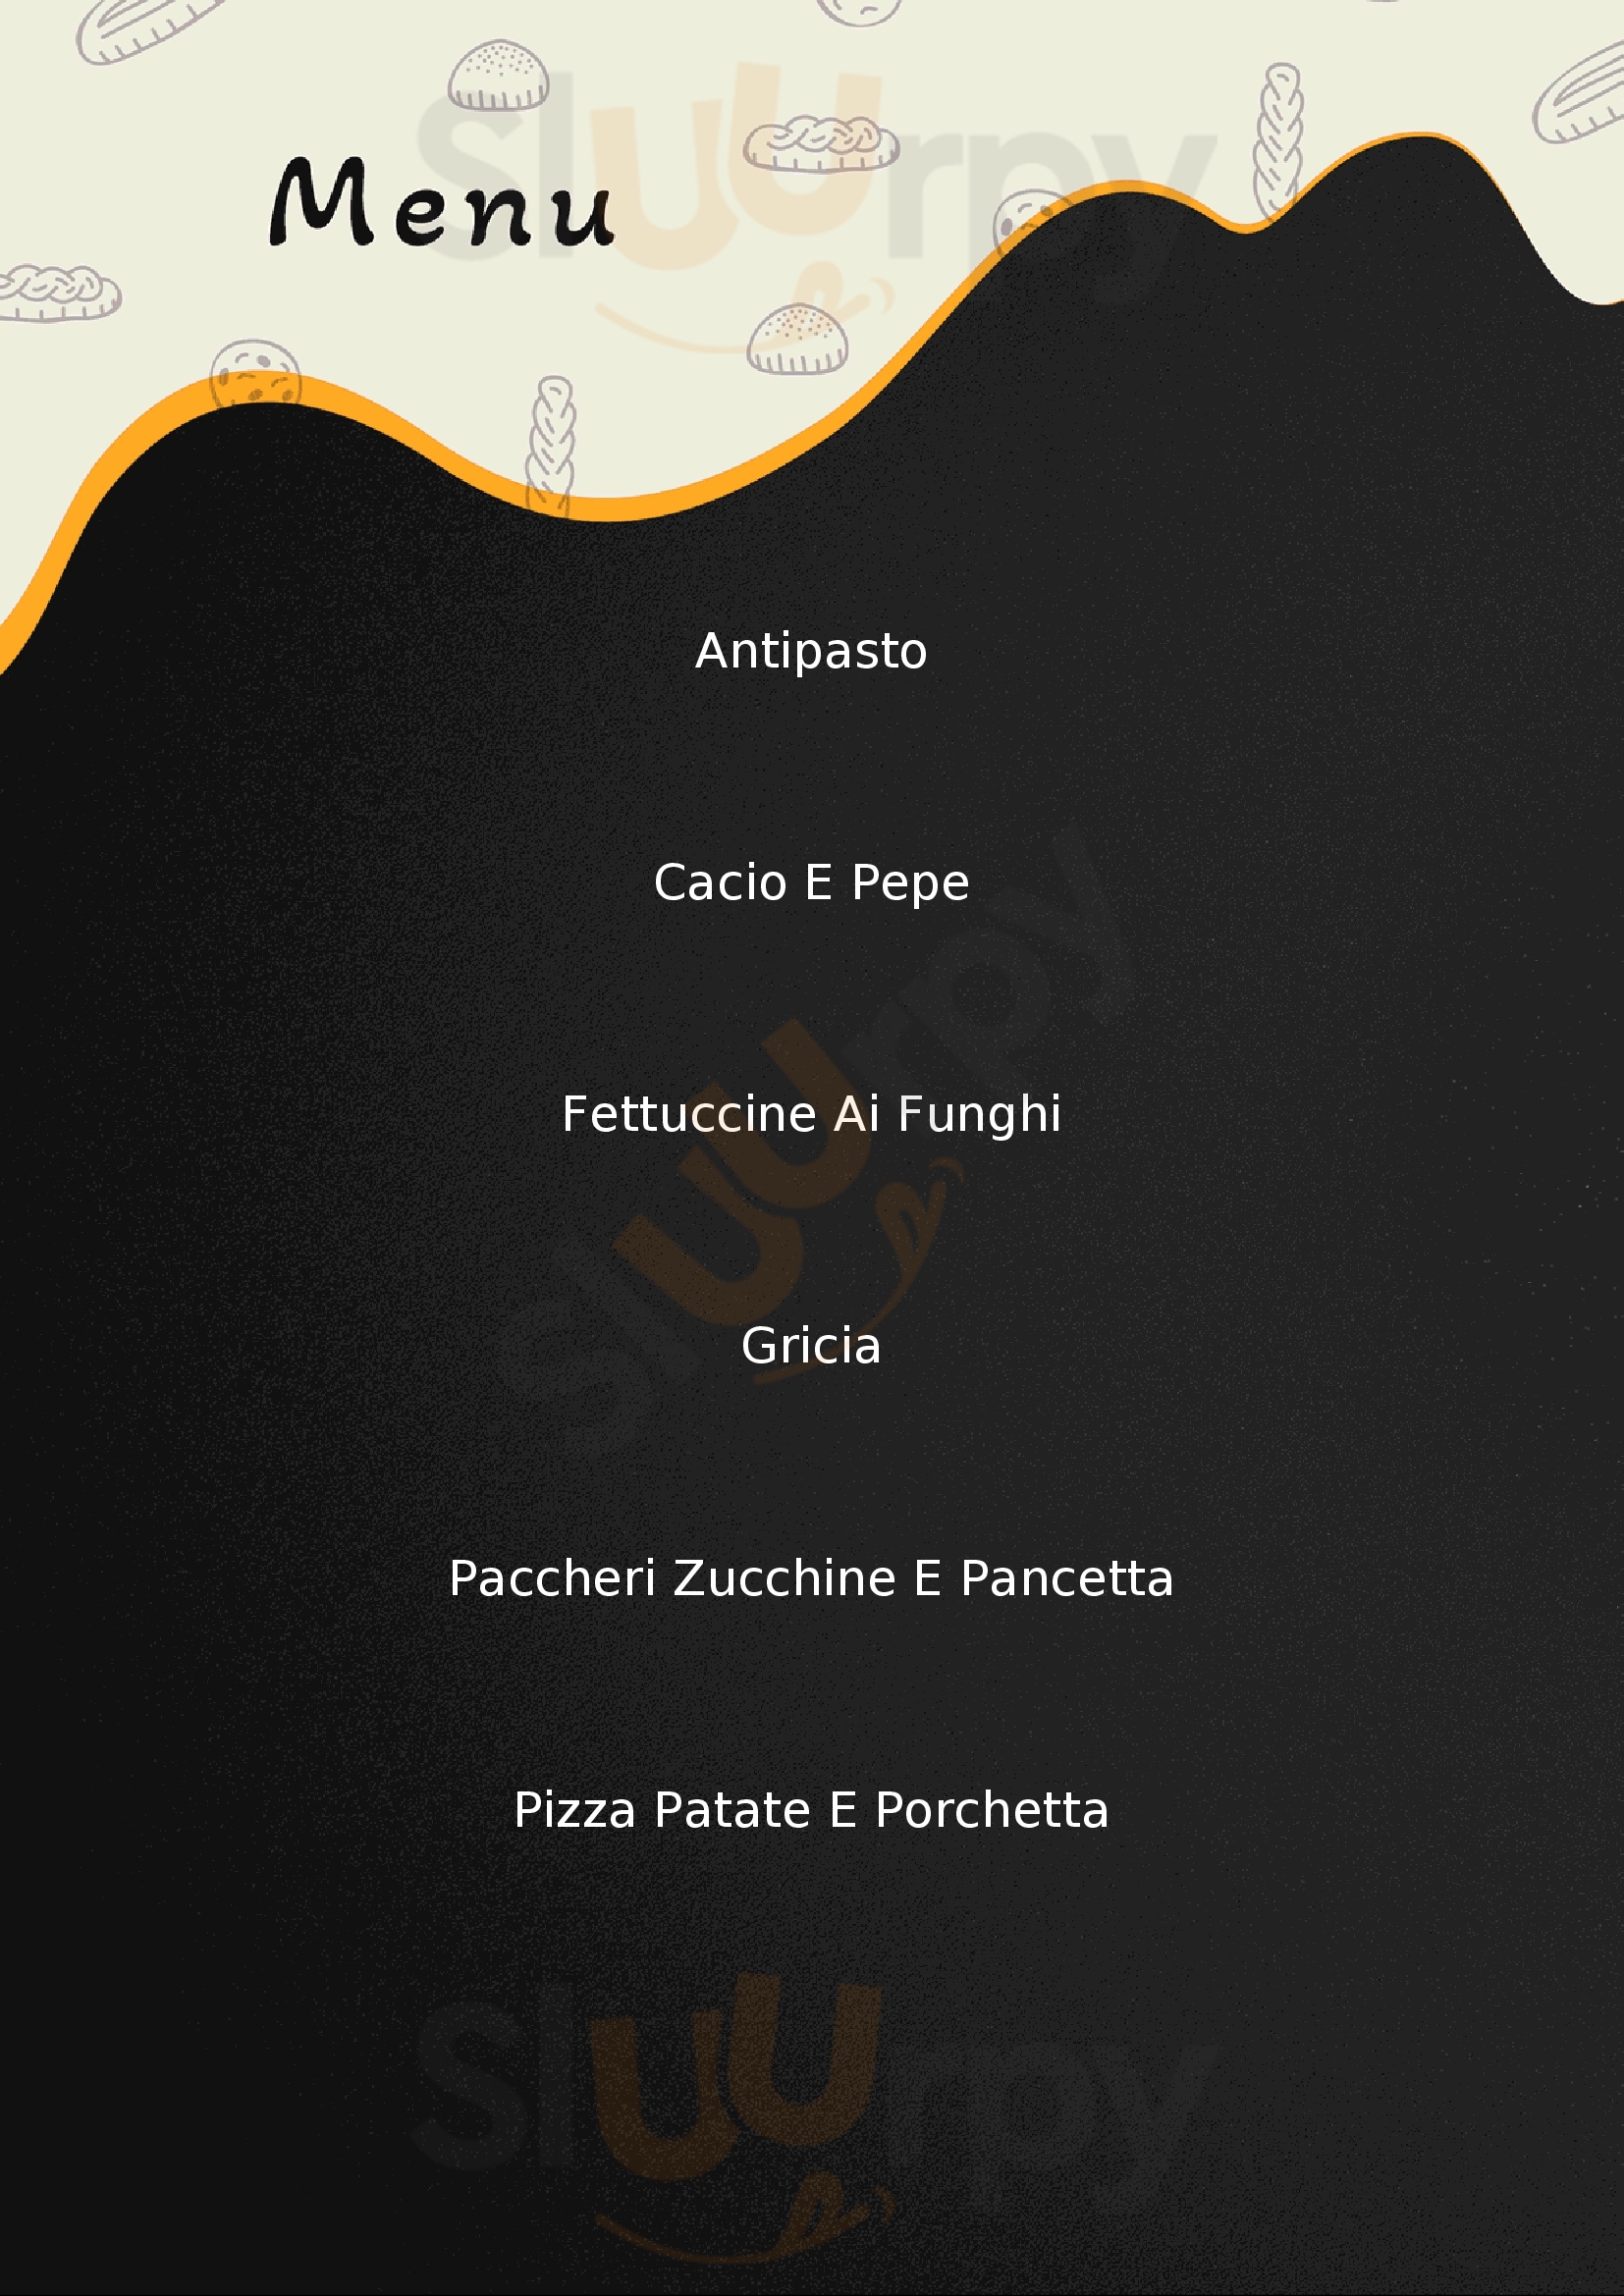 Taverna Gotica Ristorante Pizzeria Di S. Greco Anagni menù 1 pagina